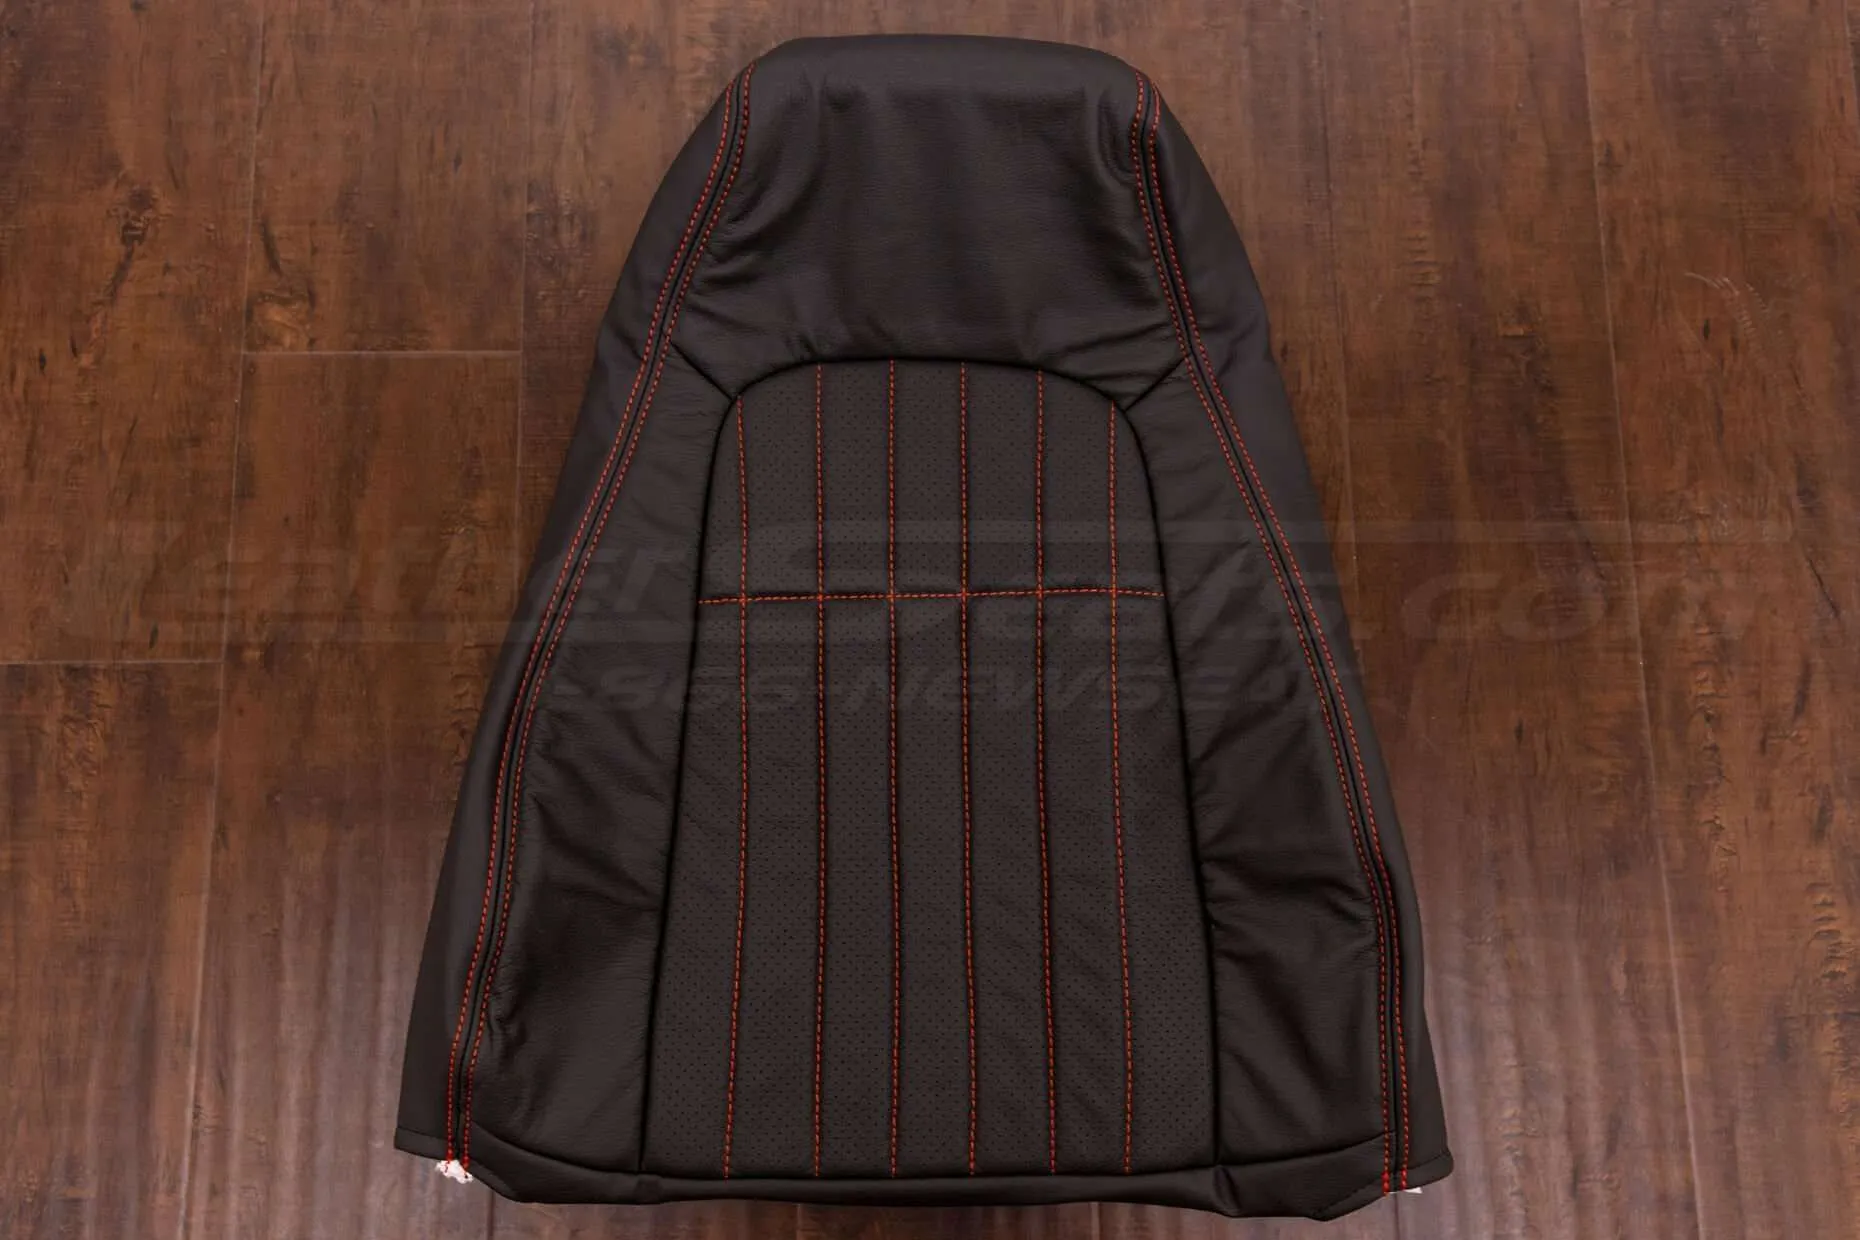 97-02 Chevrolet Camaro Upholstery Kit - Dark Graphite & Bright Red - Front backrest cushion upholstery